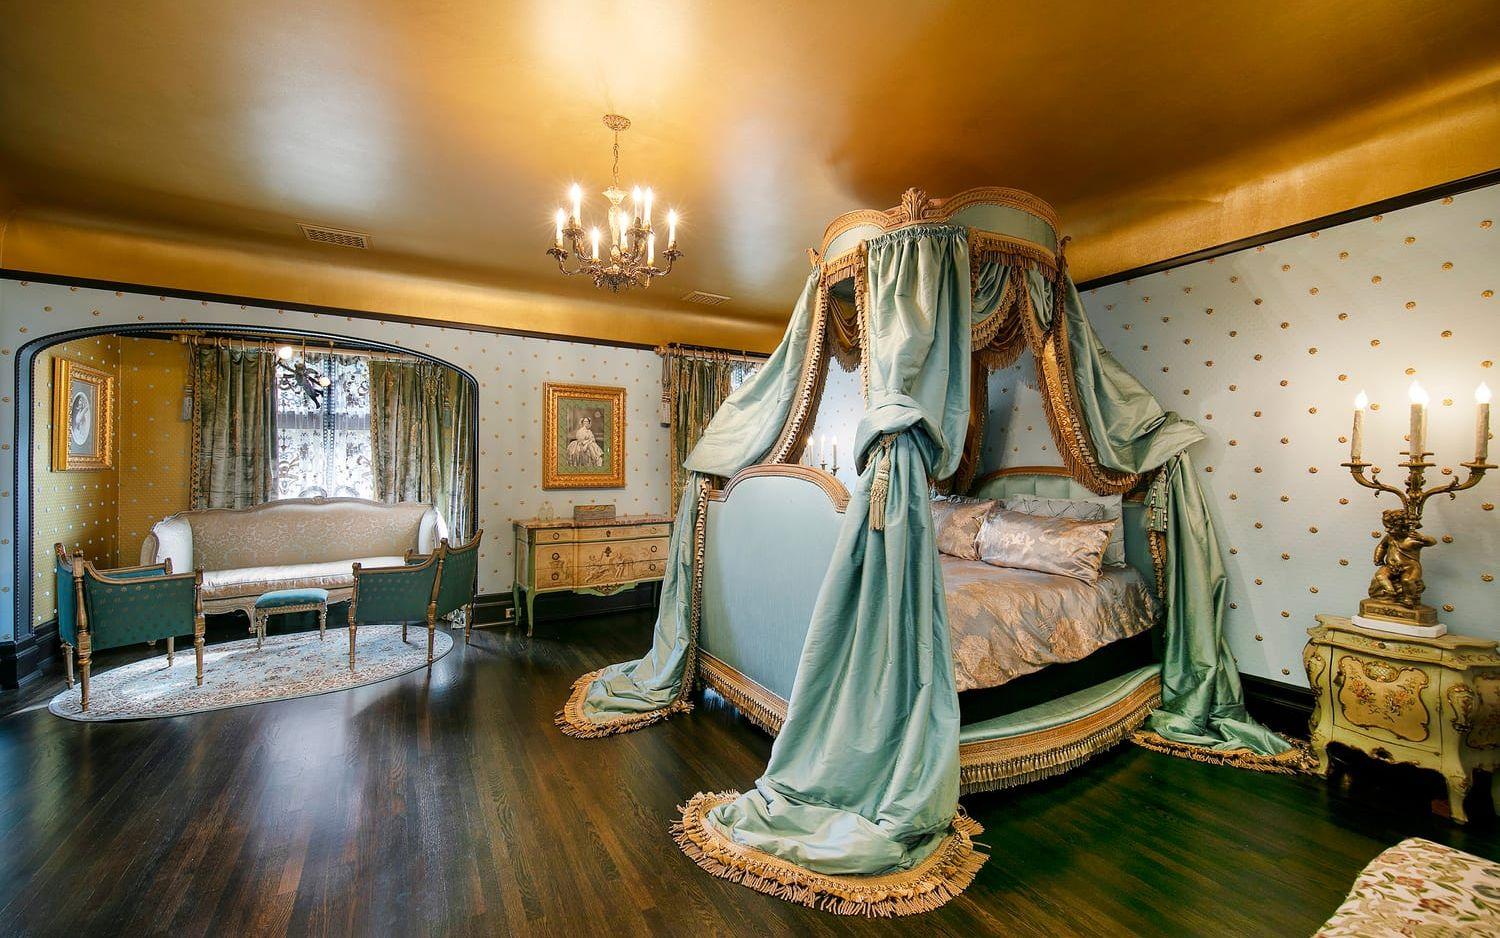 Det här sovrummet skulle lika väl kunnat legat i kungligt slottet i Versailles.